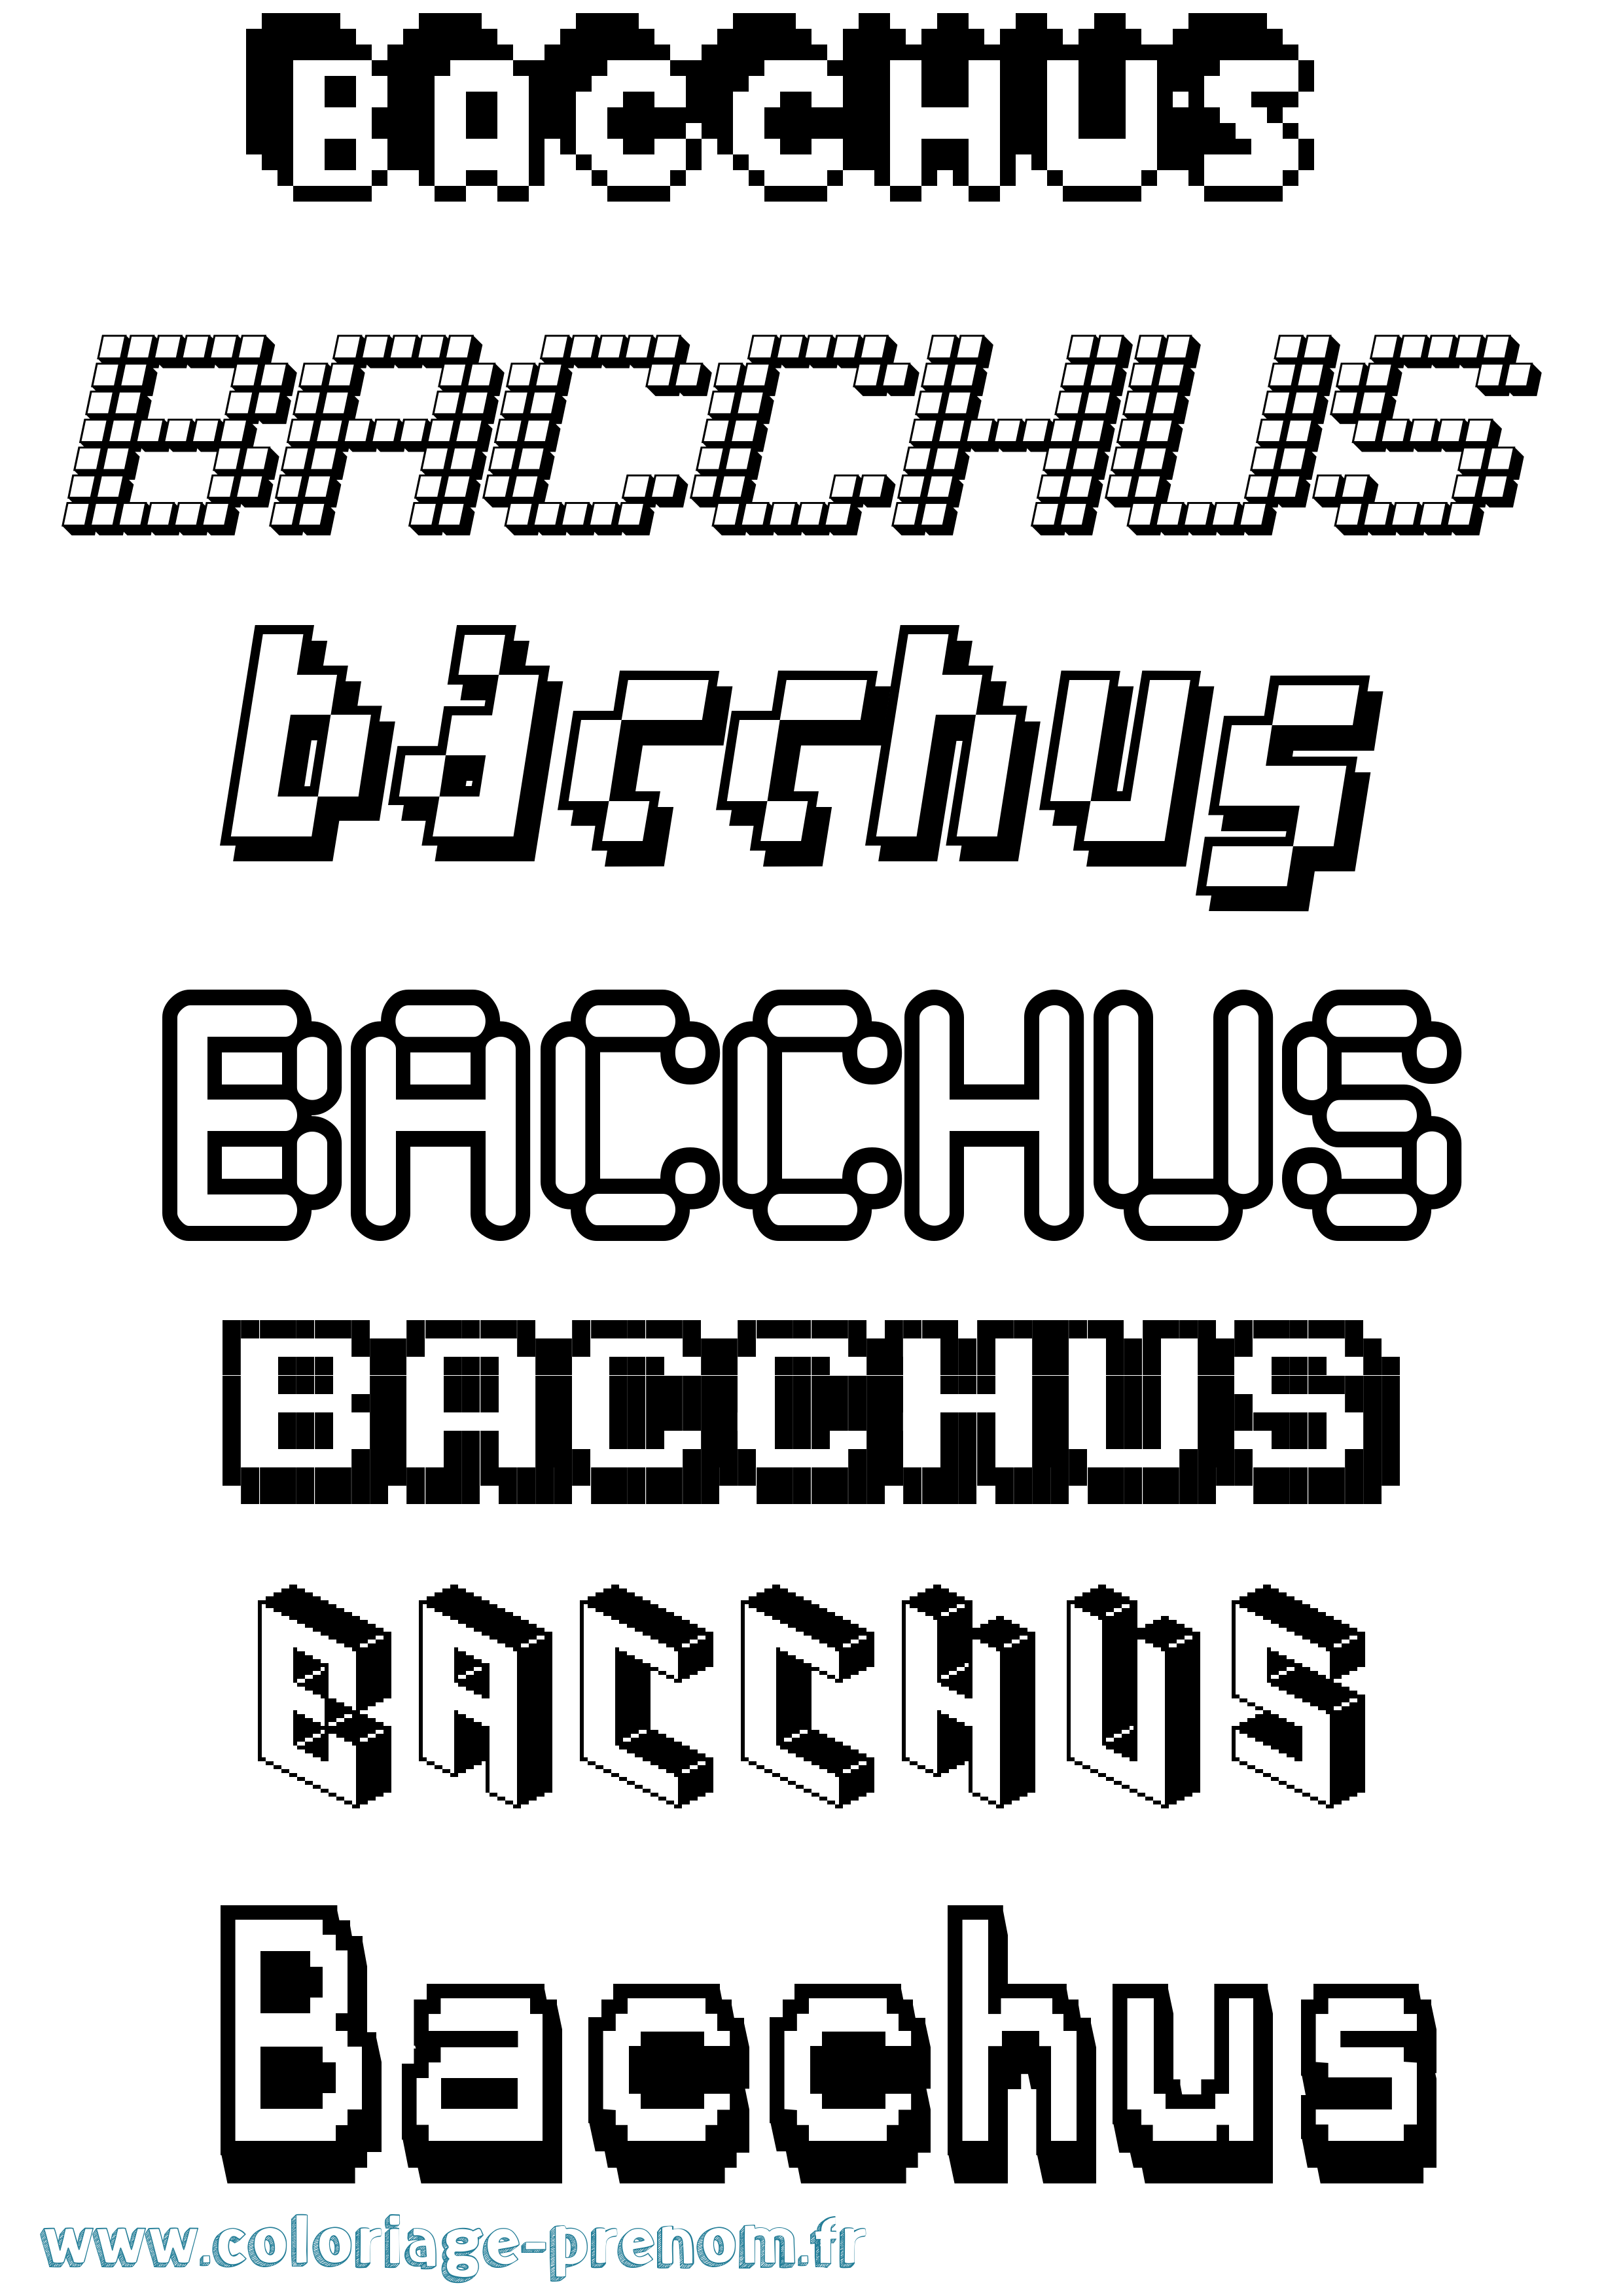 Coloriage prénom Bacchus Pixel